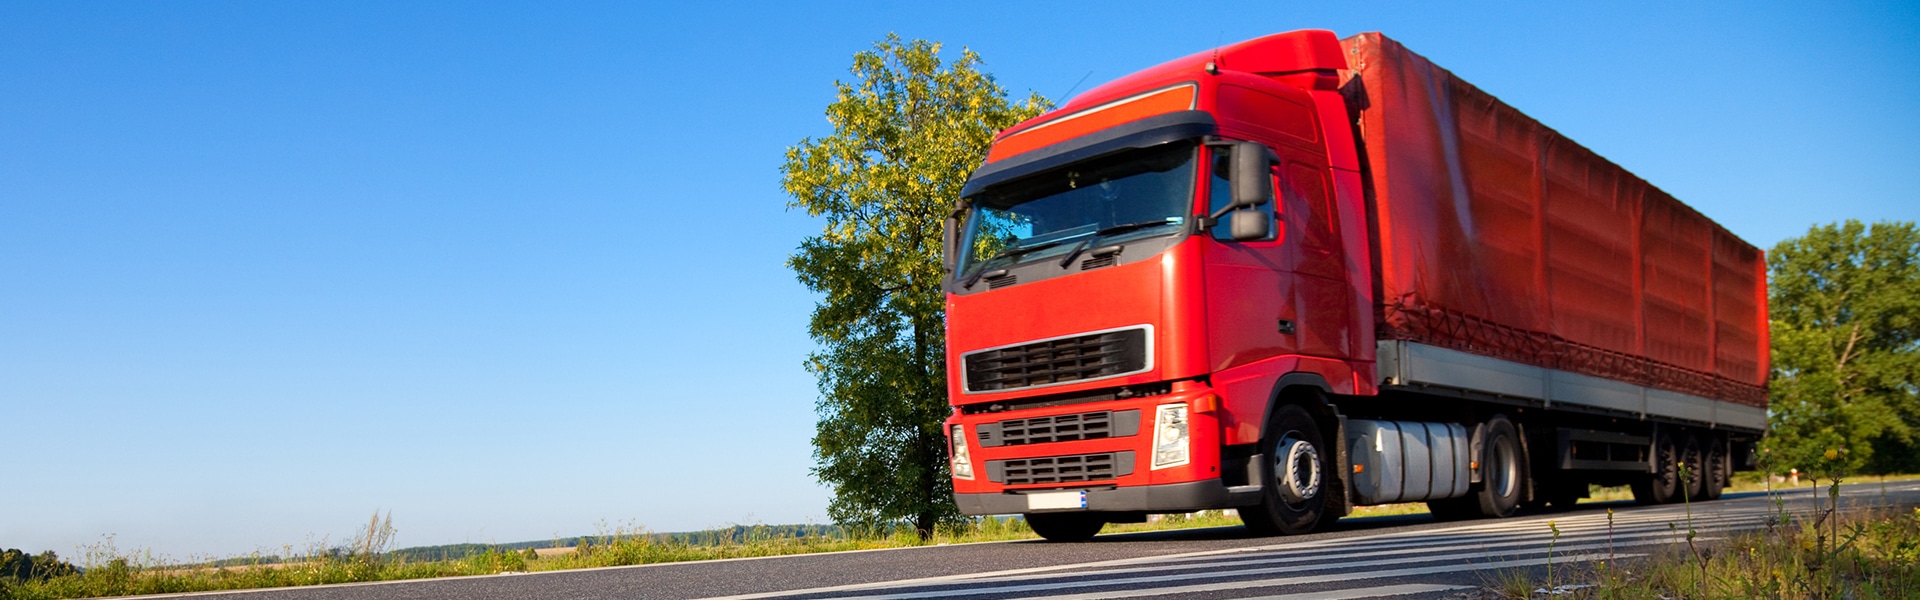 SAP Logistics Business Network steigert die Logistik-Effizienz innerhalb Europas mit InstaFreight